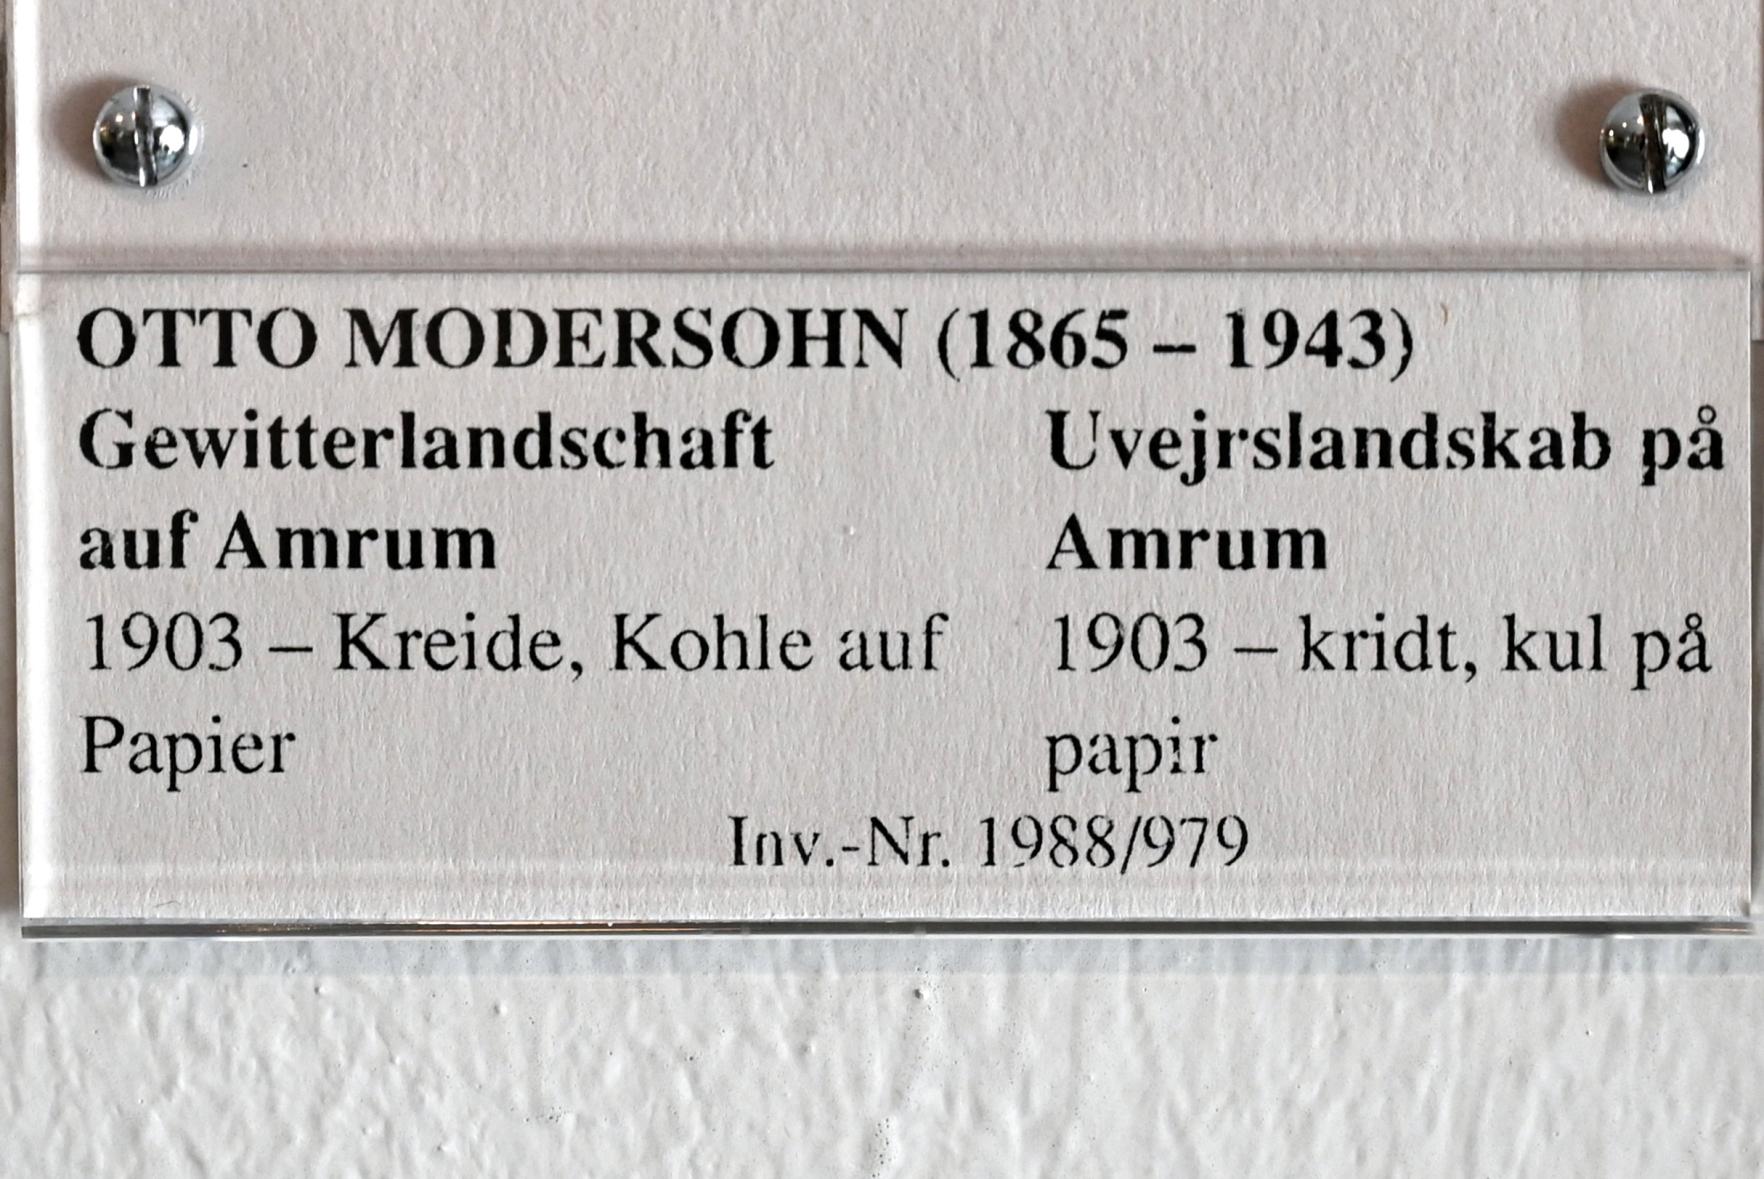 Otto Modersohn (1903), Gewitterlandschaft auf Amrum, Schleswig, Landesmuseum für Kunst und Kulturgeschichte, Jugendstil, 1903, Bild 3/3